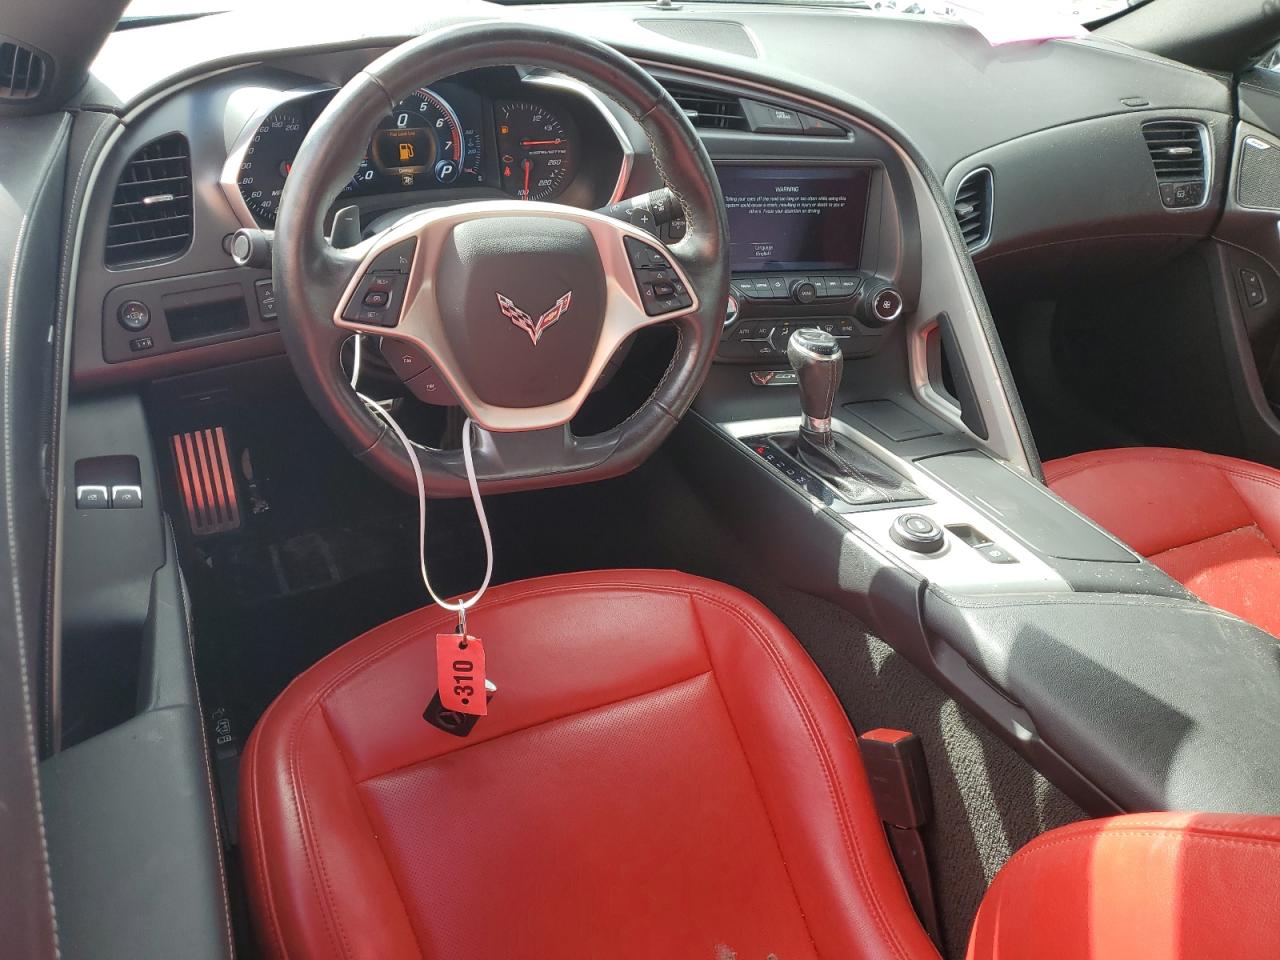 VIN 1G1YB3D77K5119197 Chevrolet Corvette S 2019 8